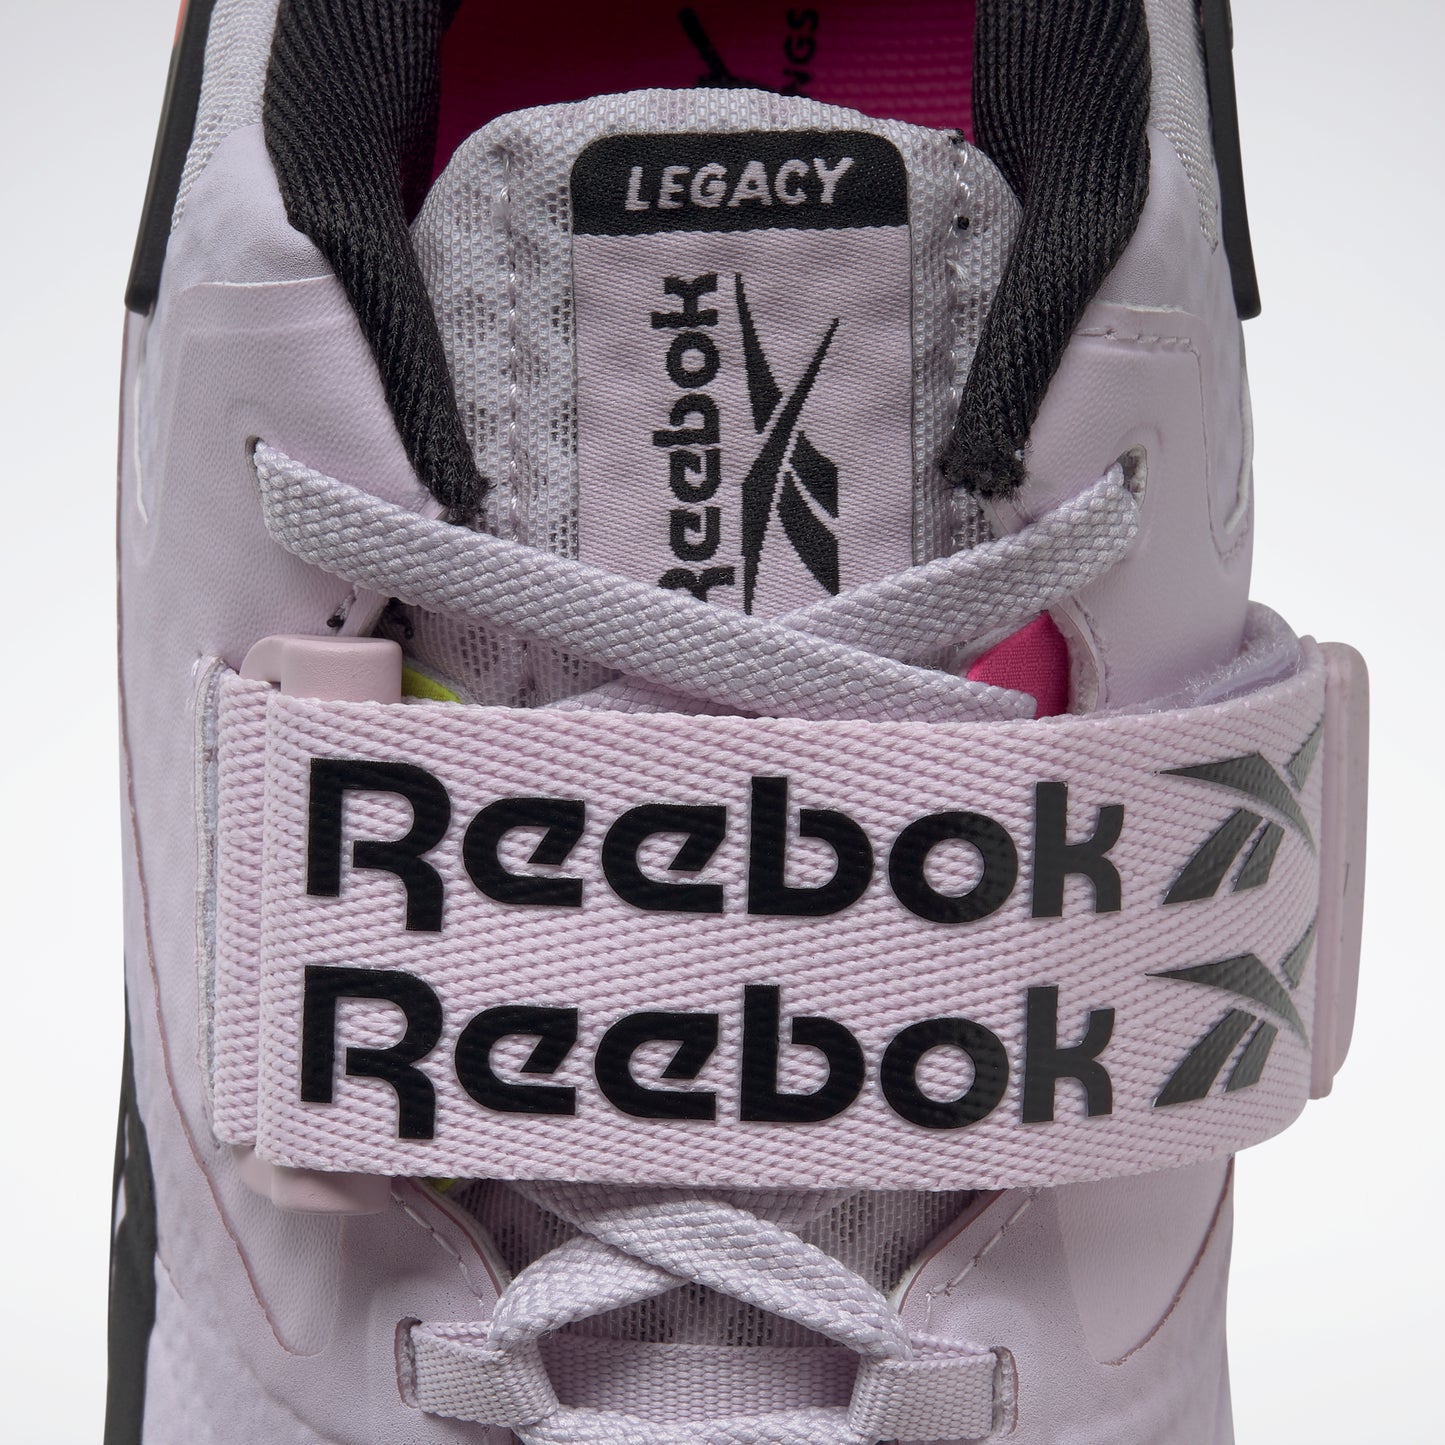 Reebok Footwear Women Legacy Lifter Ii Shoes Quaglw/Atopnk/Cblack